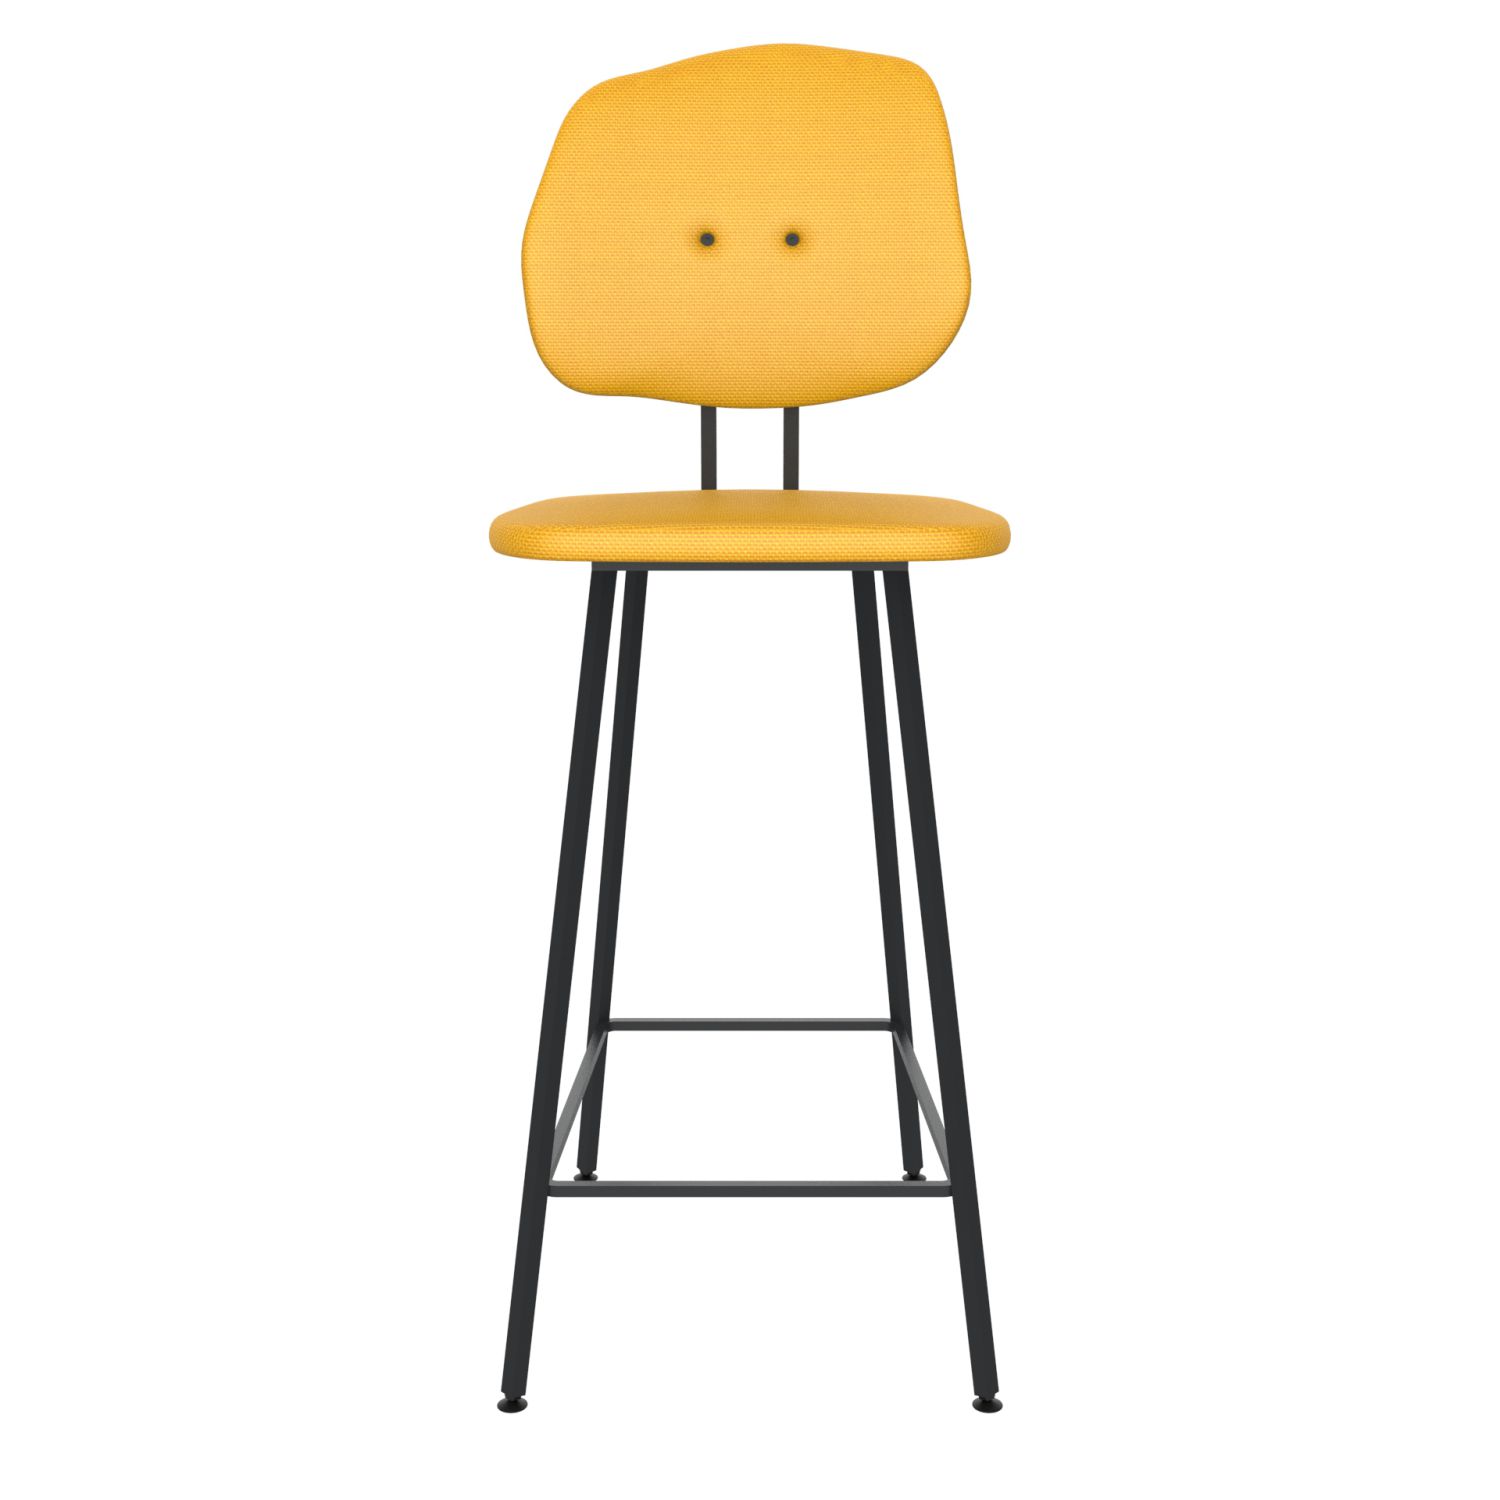 maarten baas barstool 75 cm without armrests backrest g lemon yellow 051 frame black